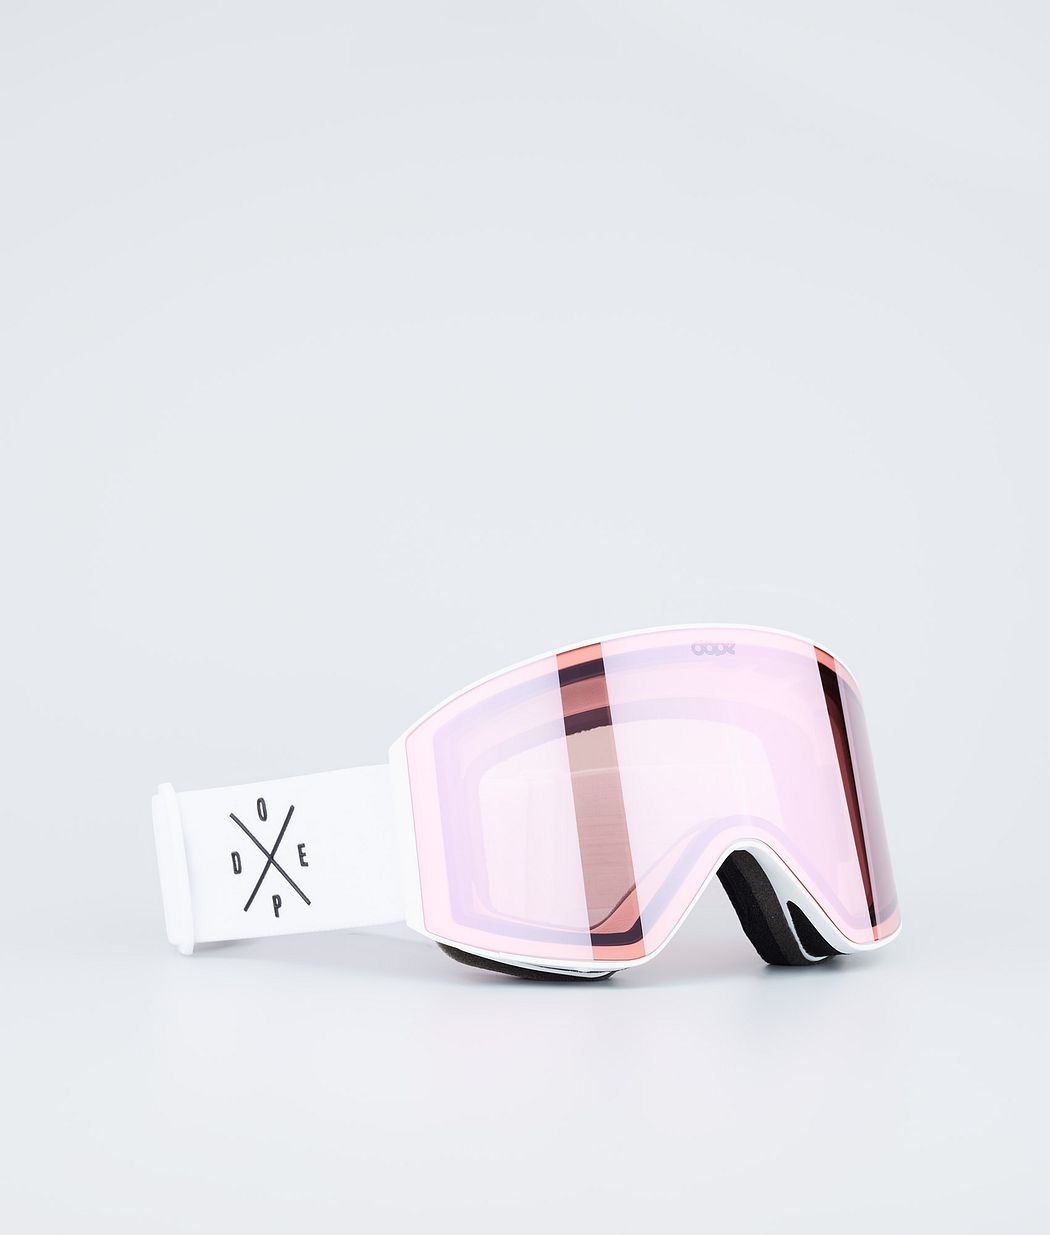 Sight スキーゴーグル White W/White Pink Mirror